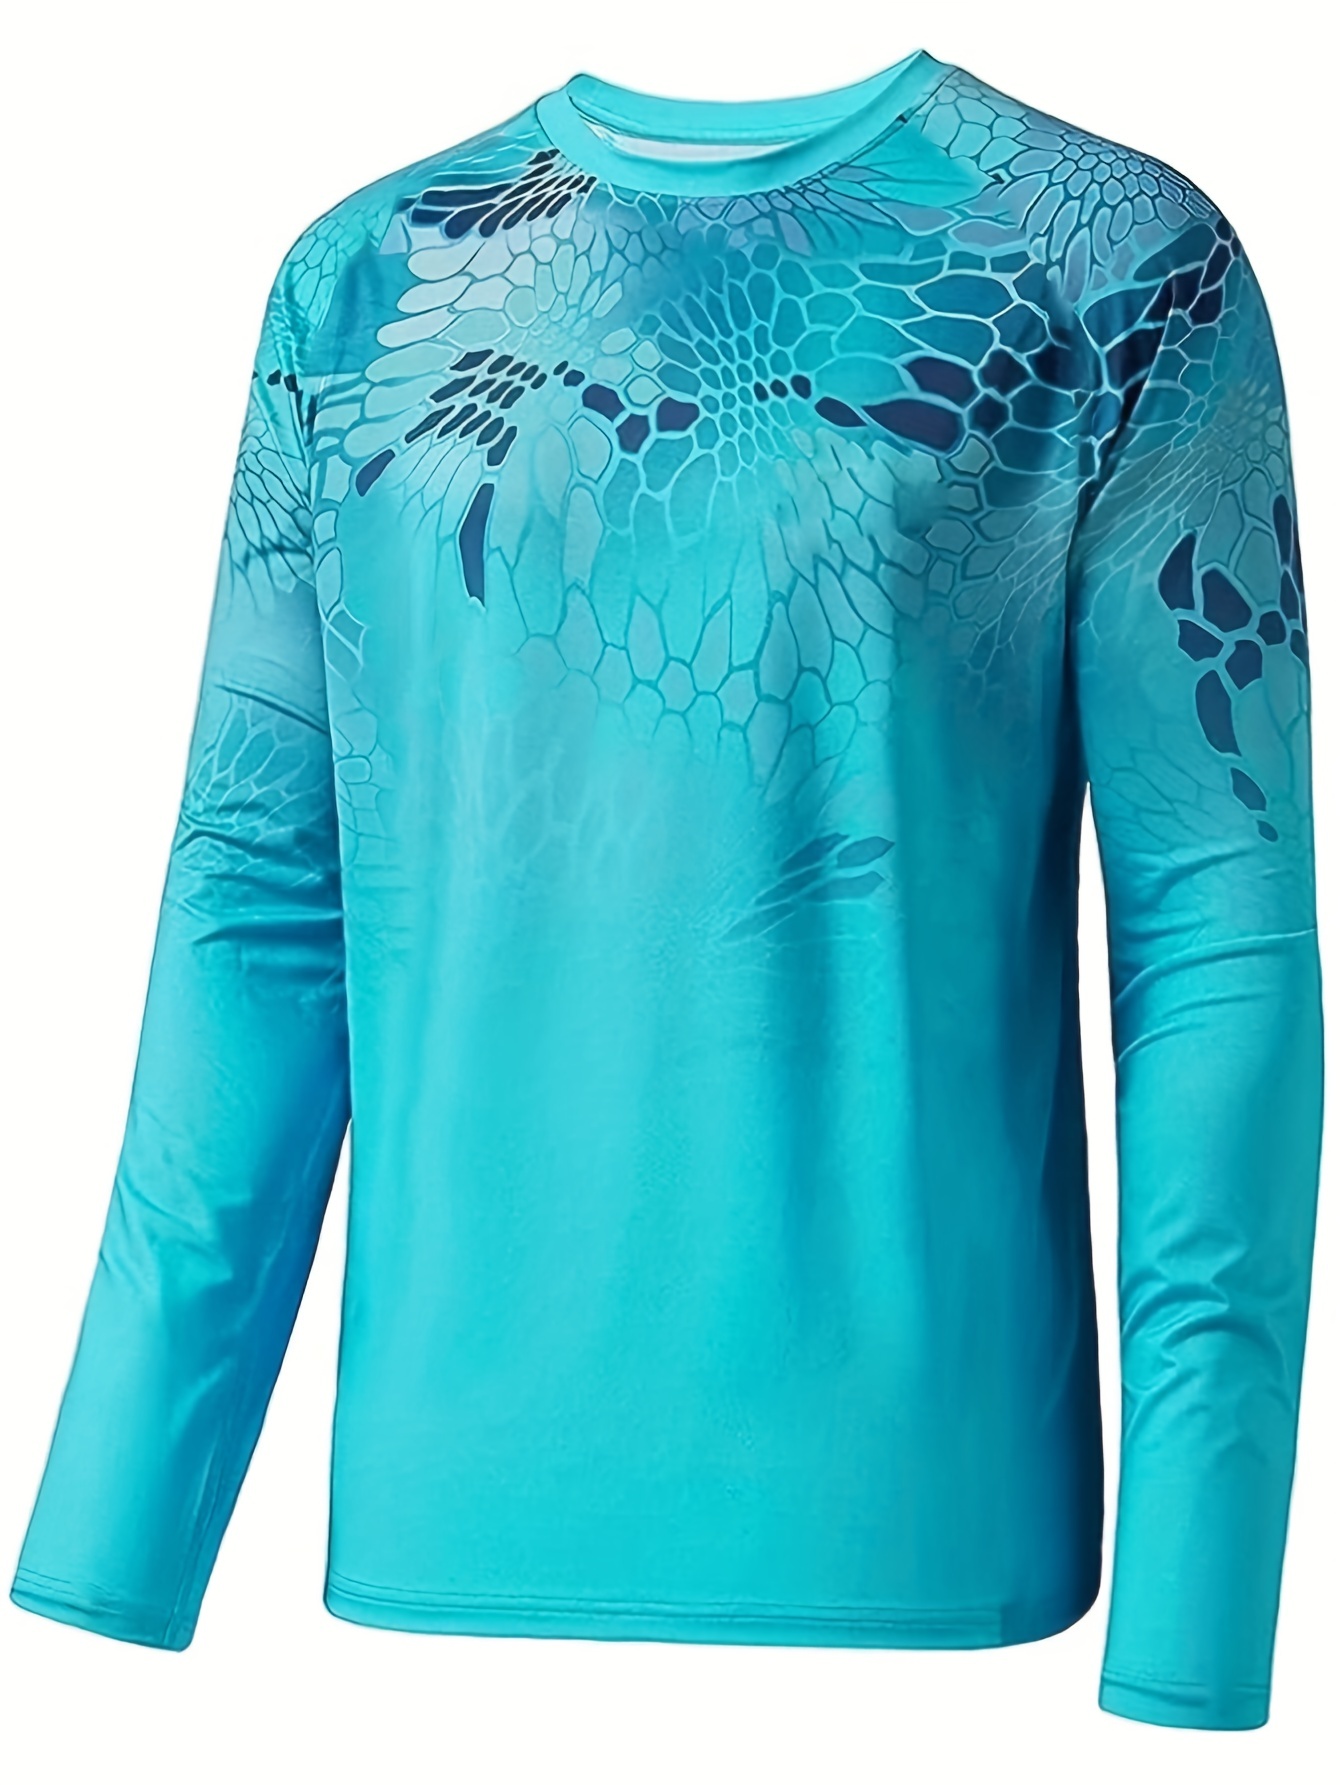 Blank Custom Polyester Upf 50 Fishing Shirt for Men Long Sleeve